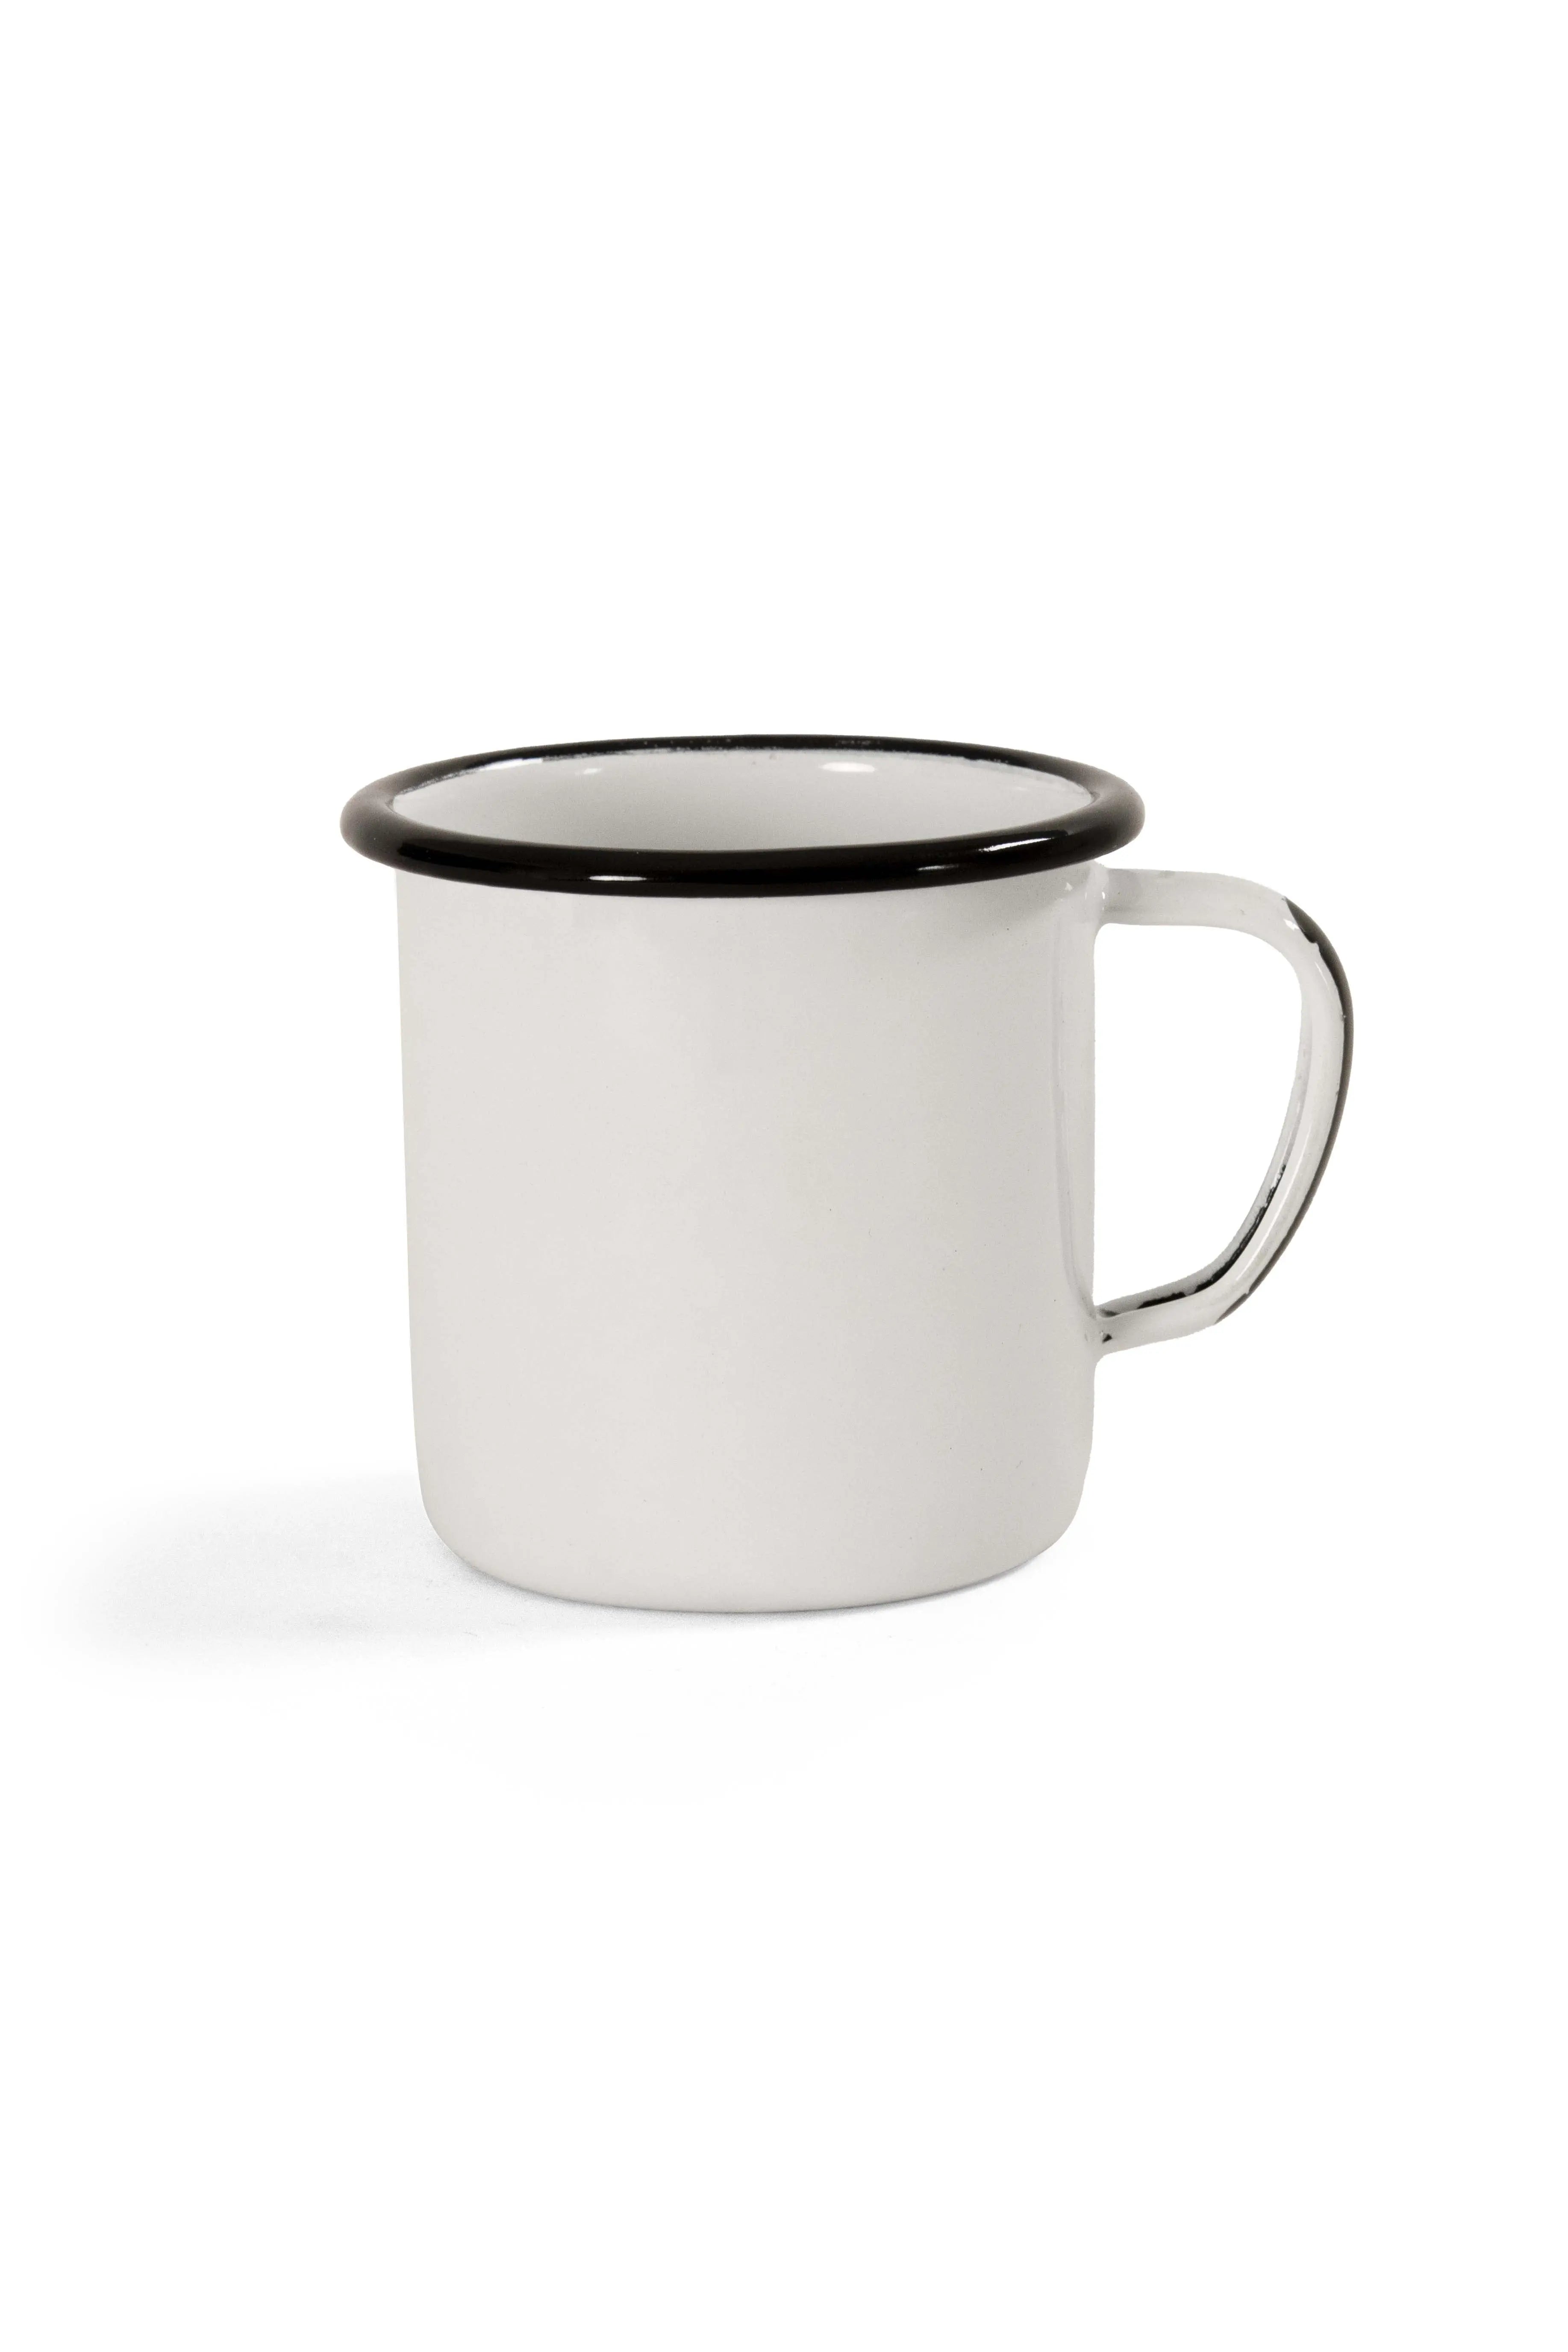 Alpine White Enamel Coffee mug